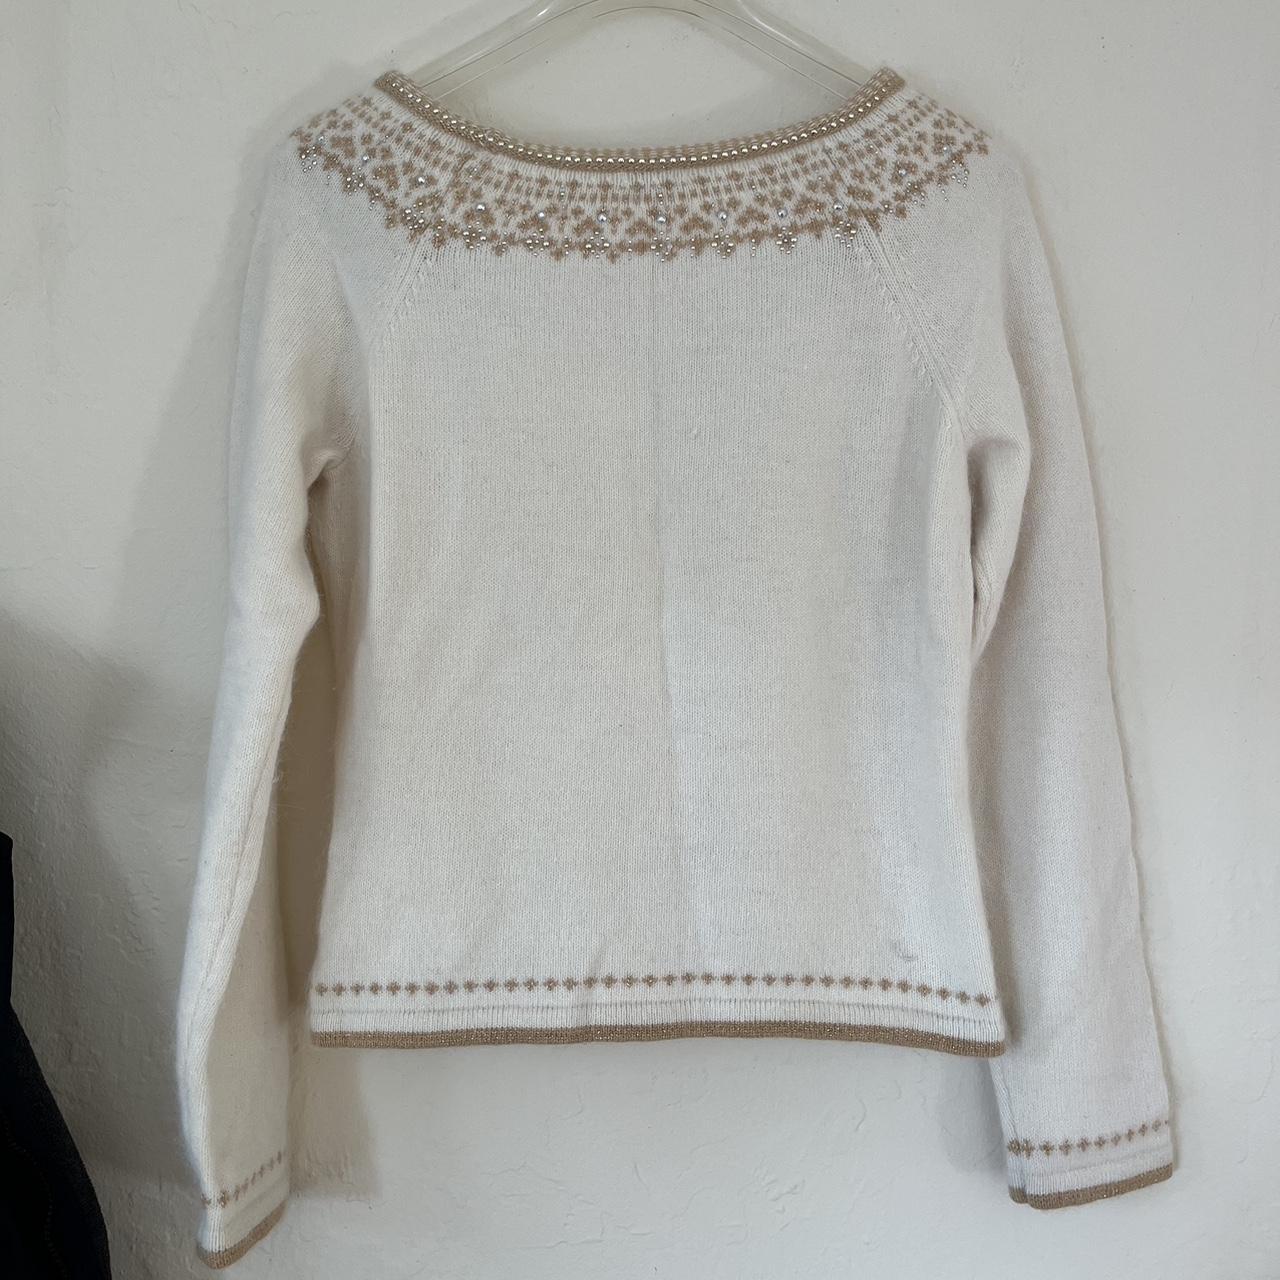 Angora Rabbit cream sweater with rhinestone detail,... - Depop